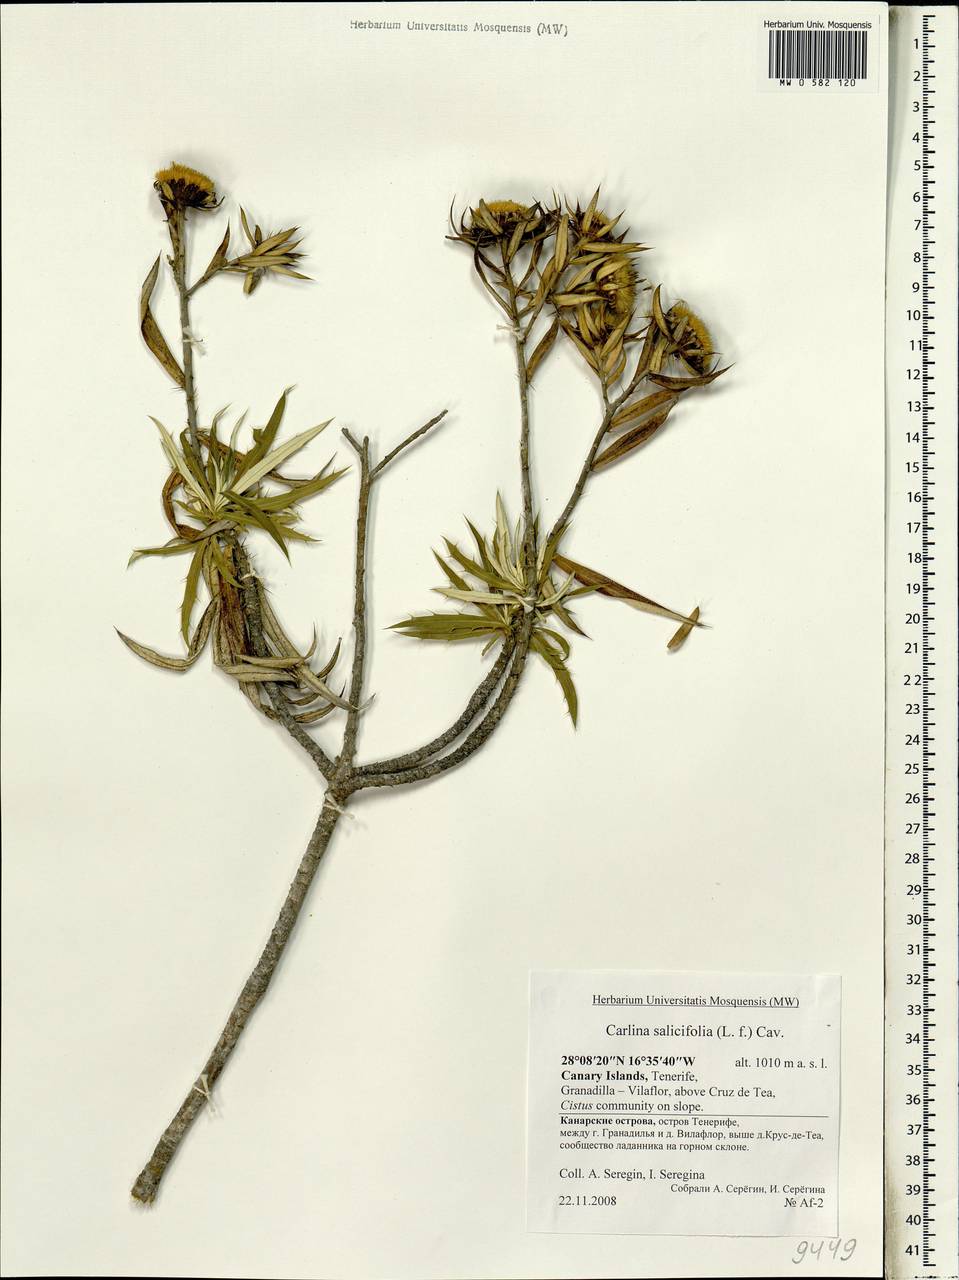 Carlina salicifolia (L. fil.) Cav., Африка (AFR) (Испания)